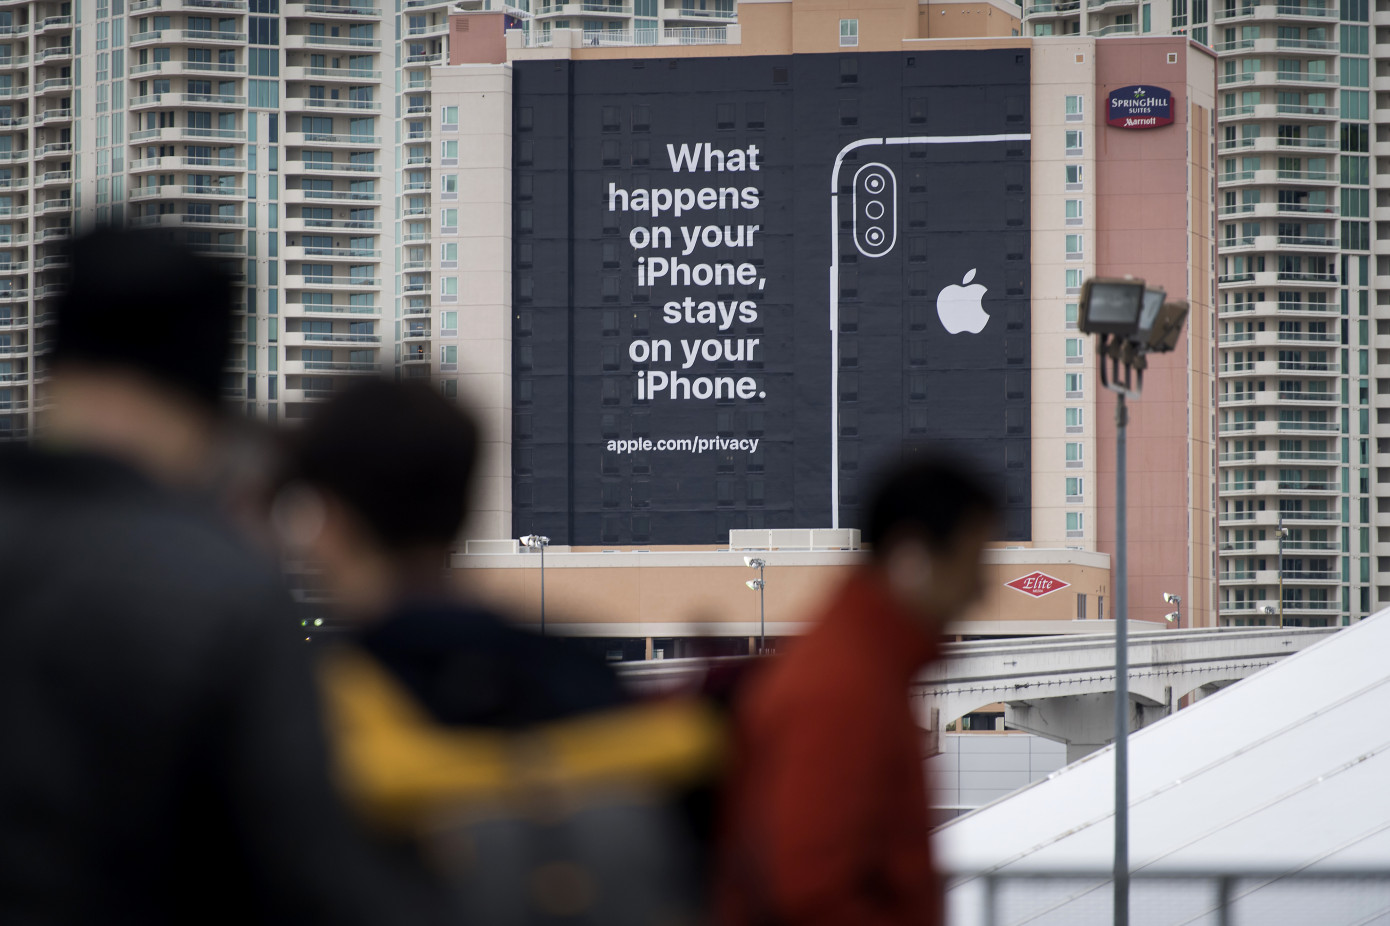 Publicidad de Apple sobre privacidad en el Consumer Electronics Show. Lo que ocurre en tu iPhone, se queda en tu iPhone.